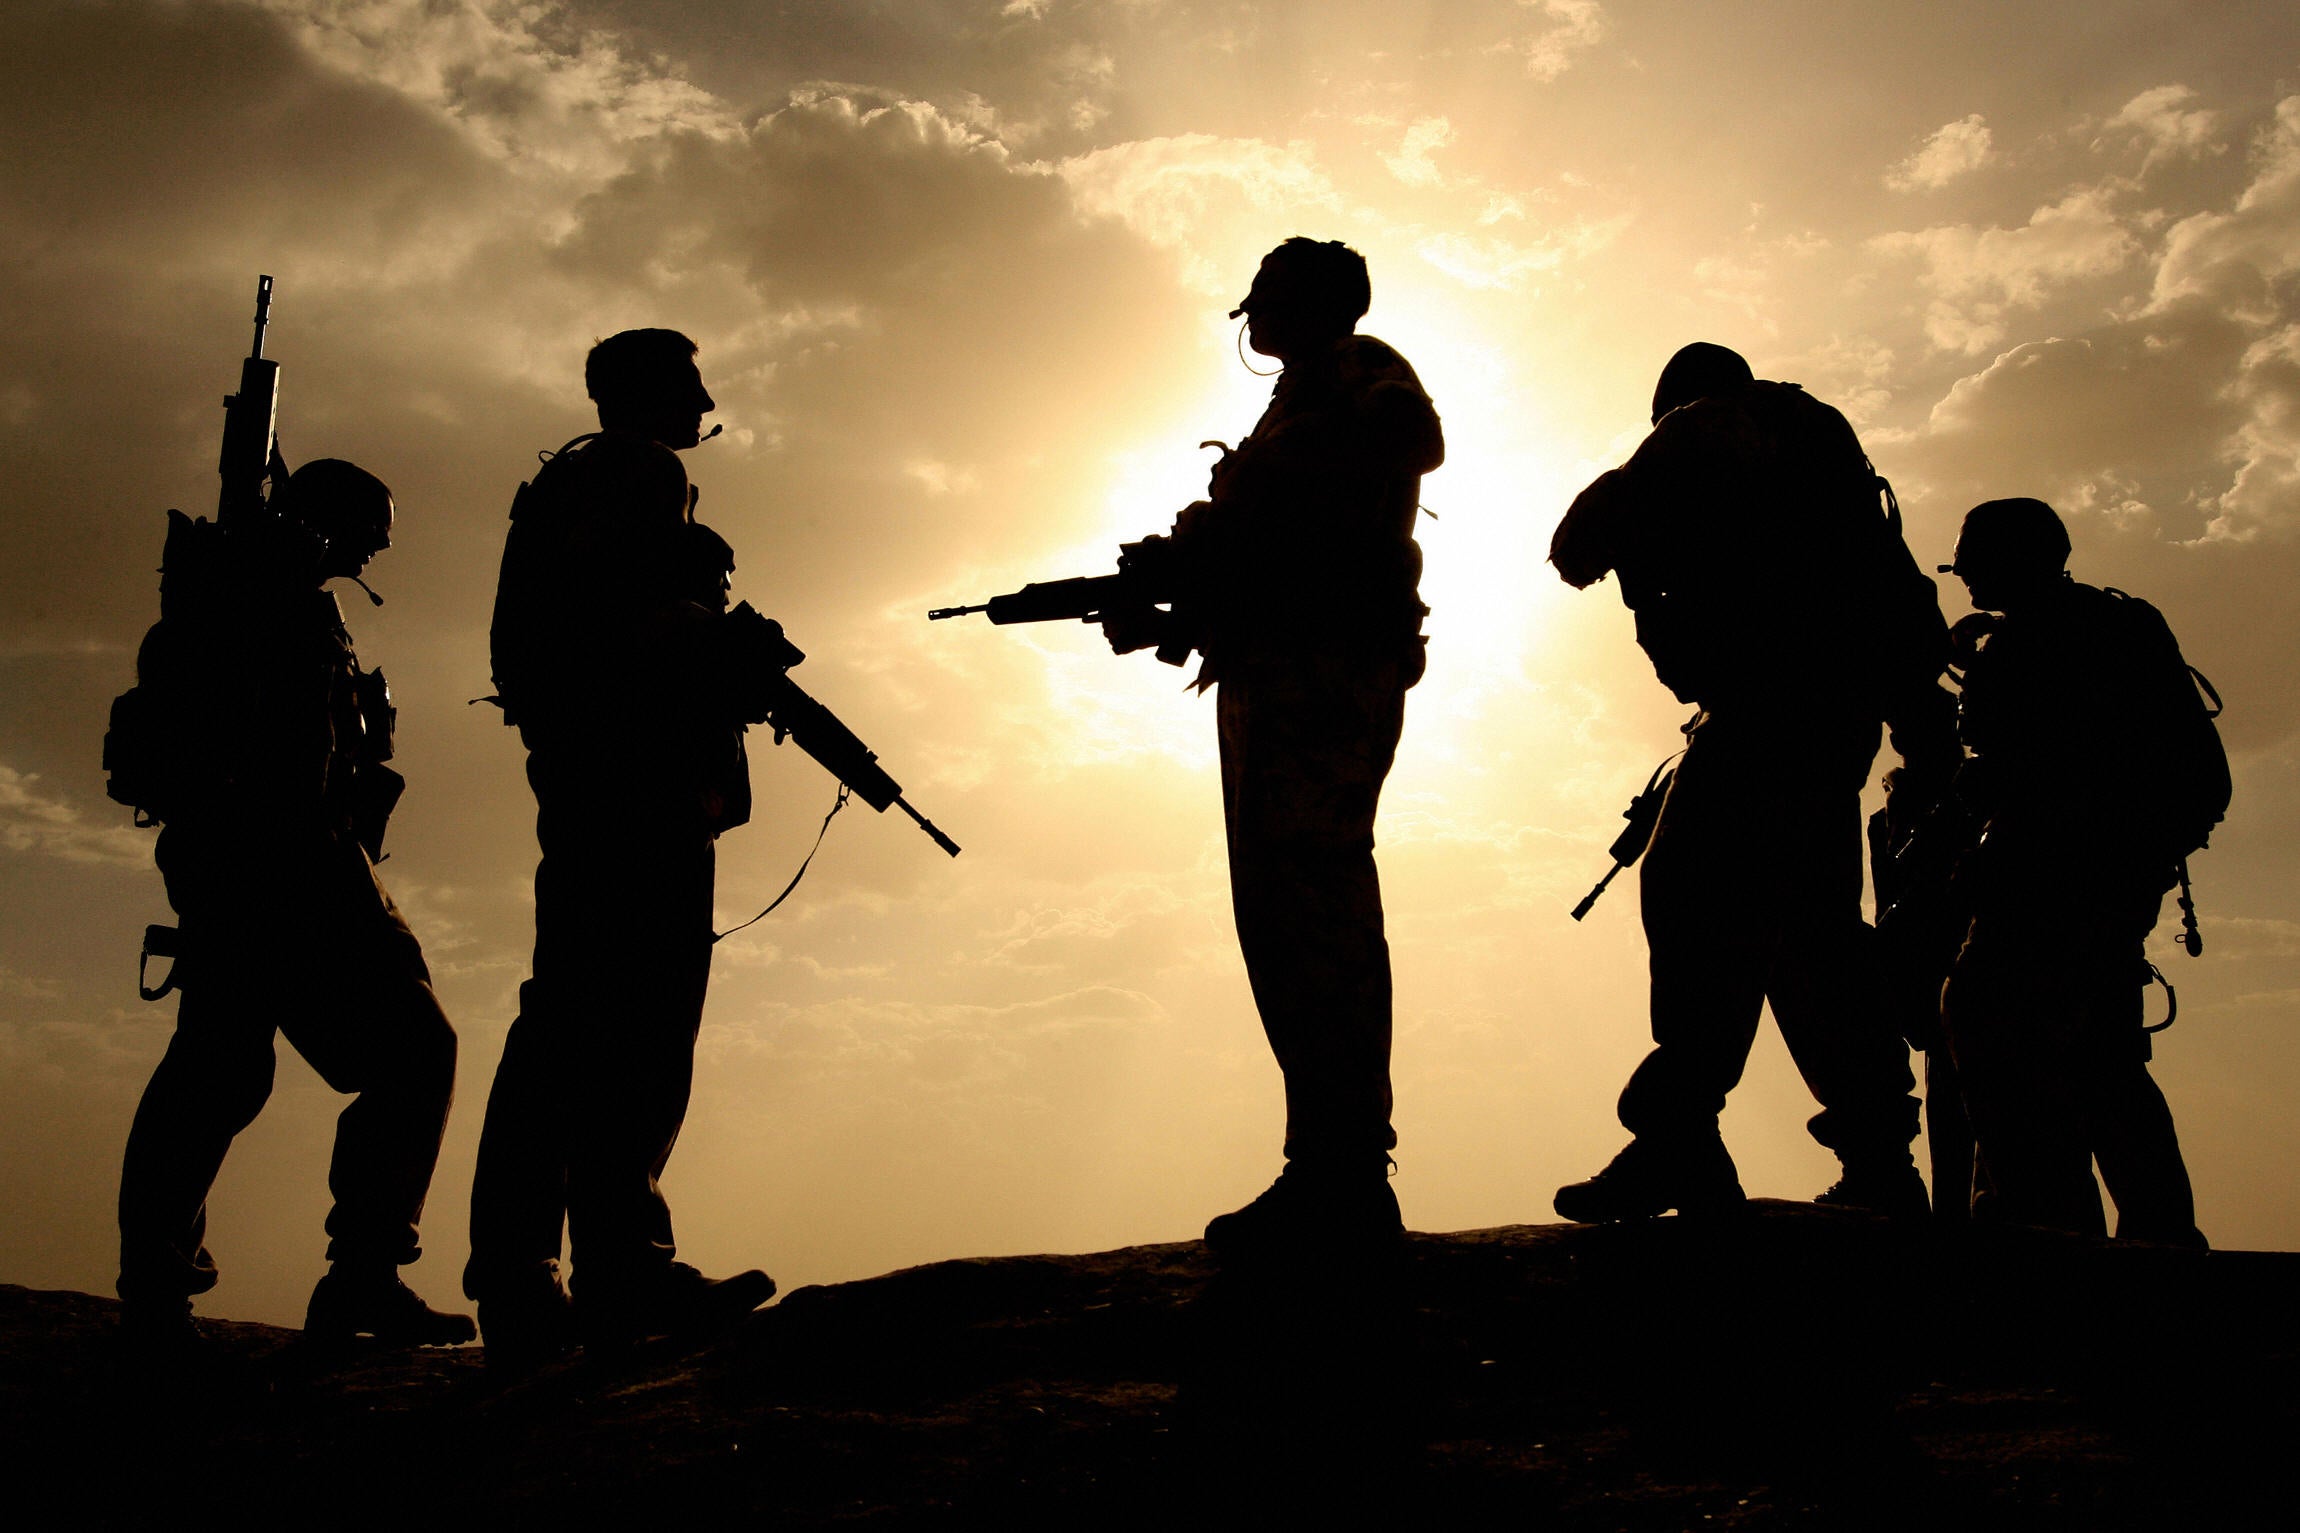 British forces entered Afghanistan in October 2001